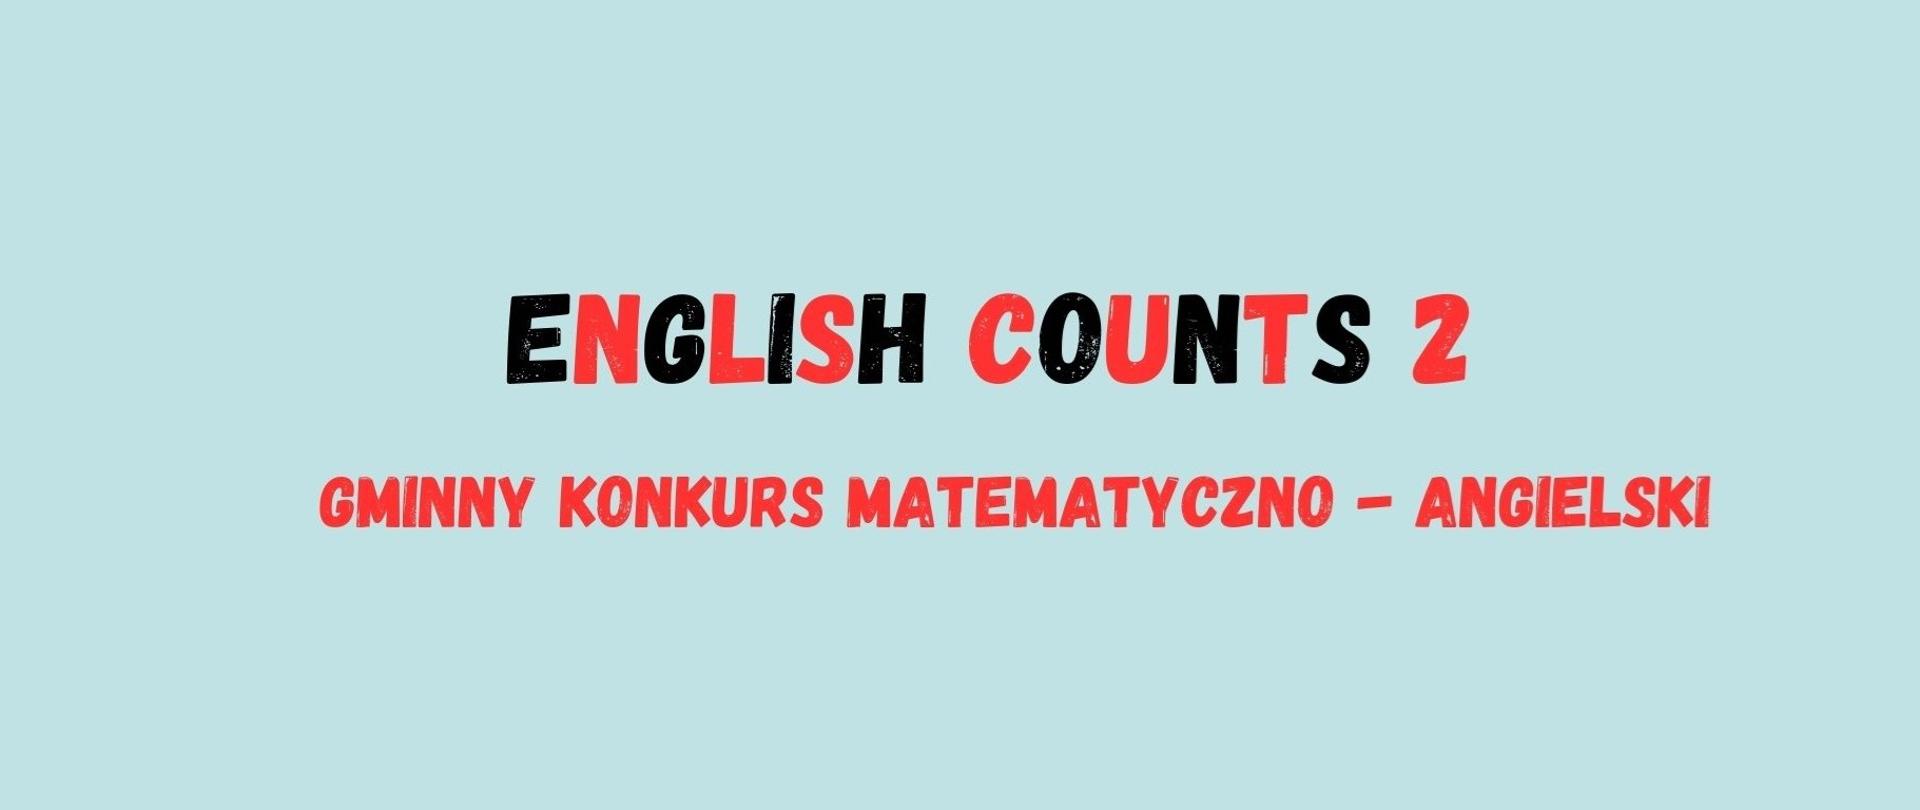 English counts 2 Gminny Konkurs matematyczno-angielski